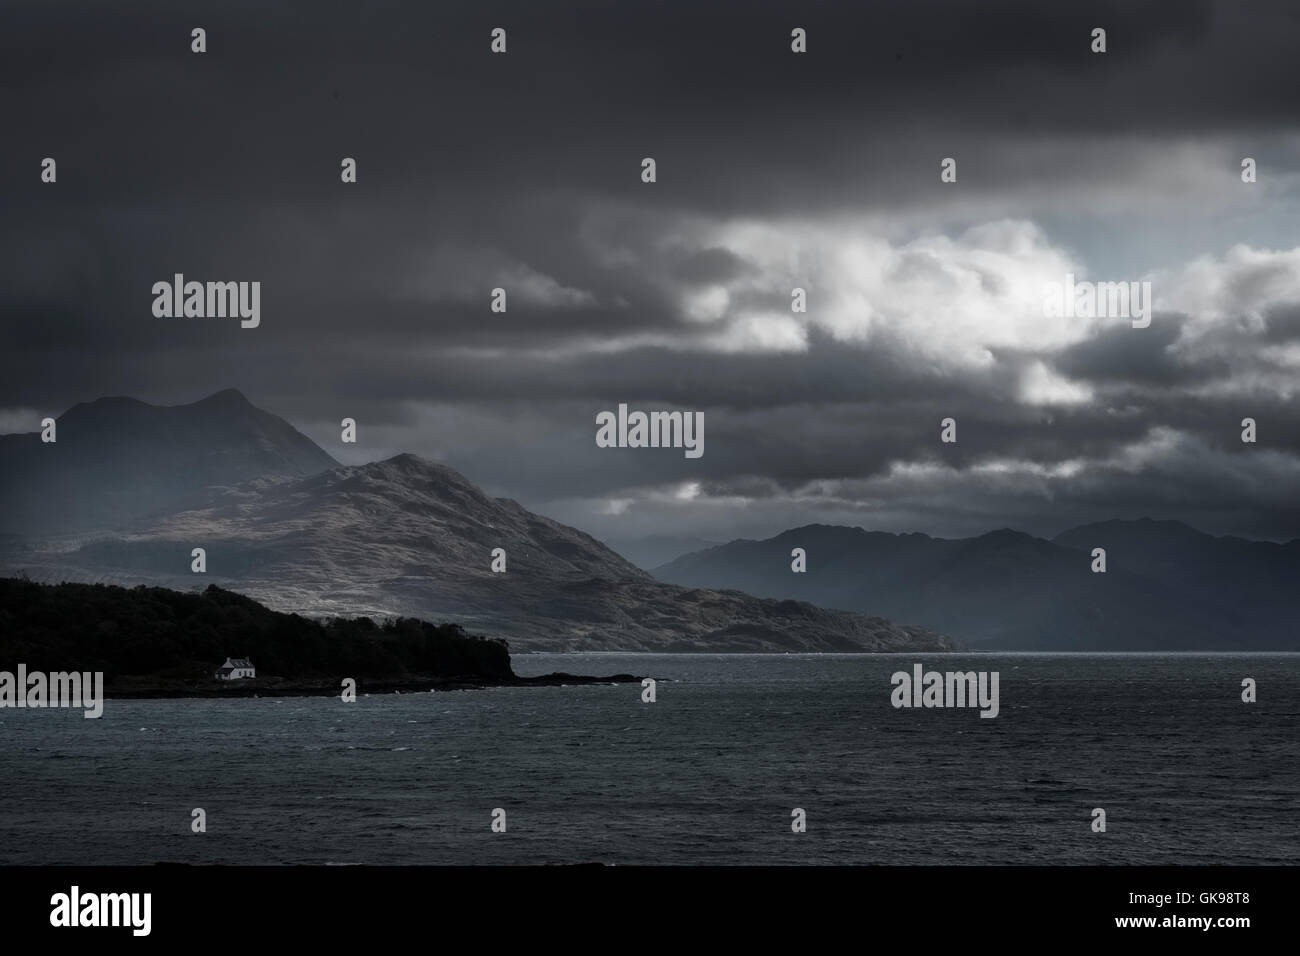 Ciel orageux dans le Sound of Sleat, le plan d'eau qui sépare l'île de Skye en Ecosse's côte continentale. Banque D'Images